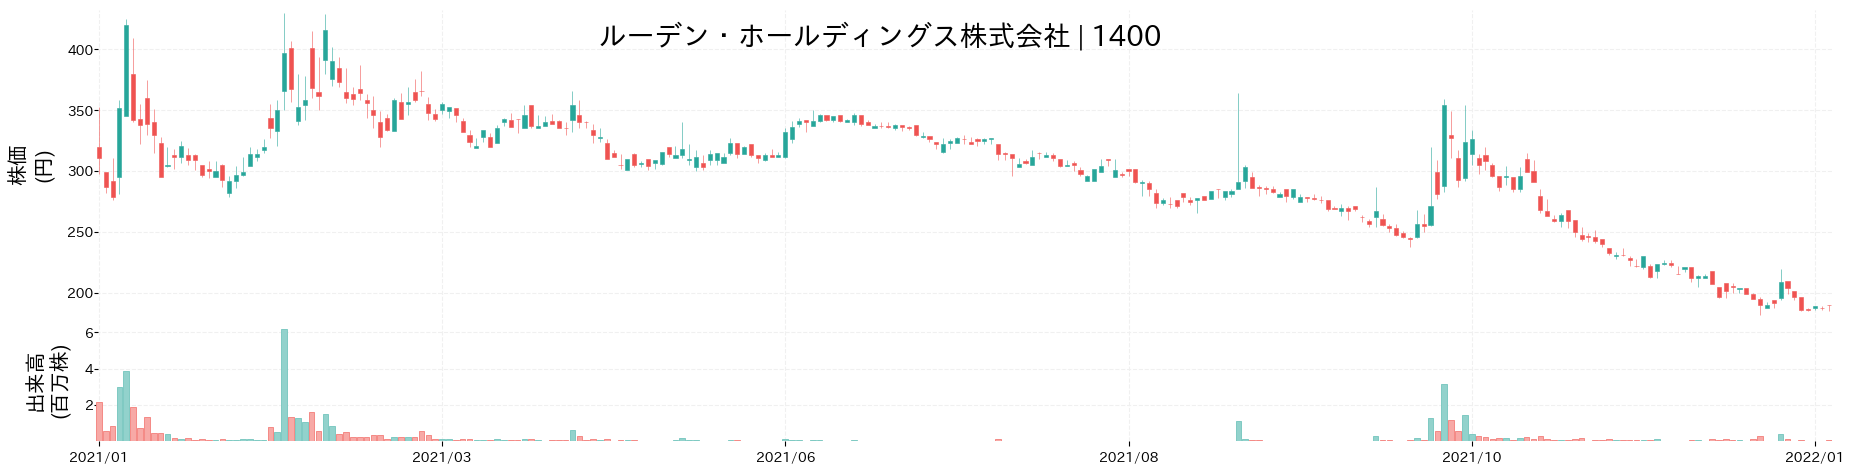 ルーデン・ホールディングスの株価推移(2021)